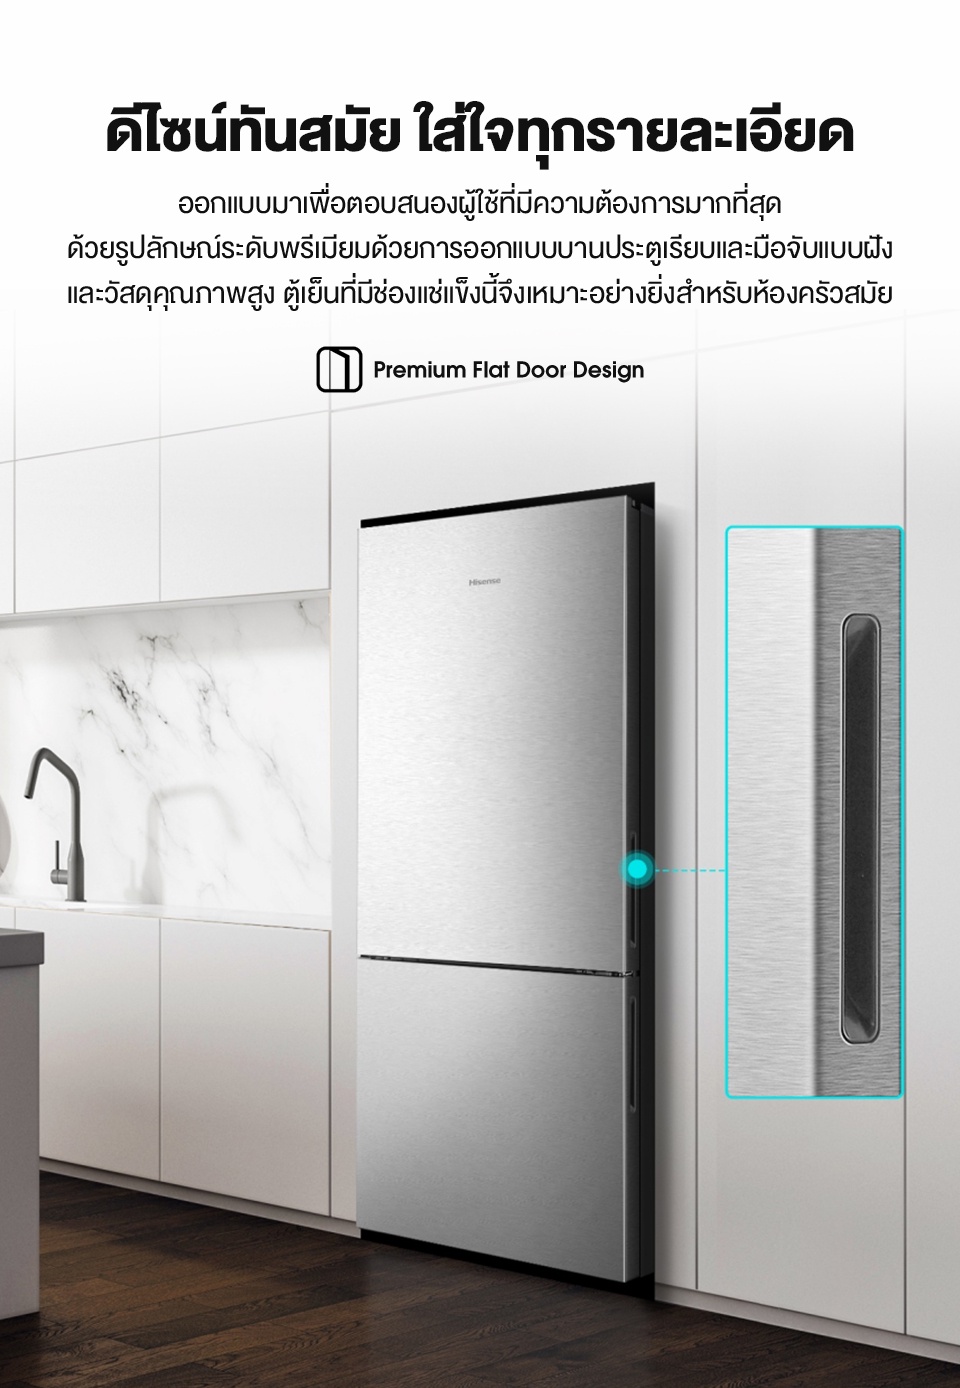 คำอธิบายเพิ่มเติมเกี่ยวกับ Hisense: ตู้เย็น 2 ประตู :14.7Q/417 ลิตร รุ่น RB556N4TGN